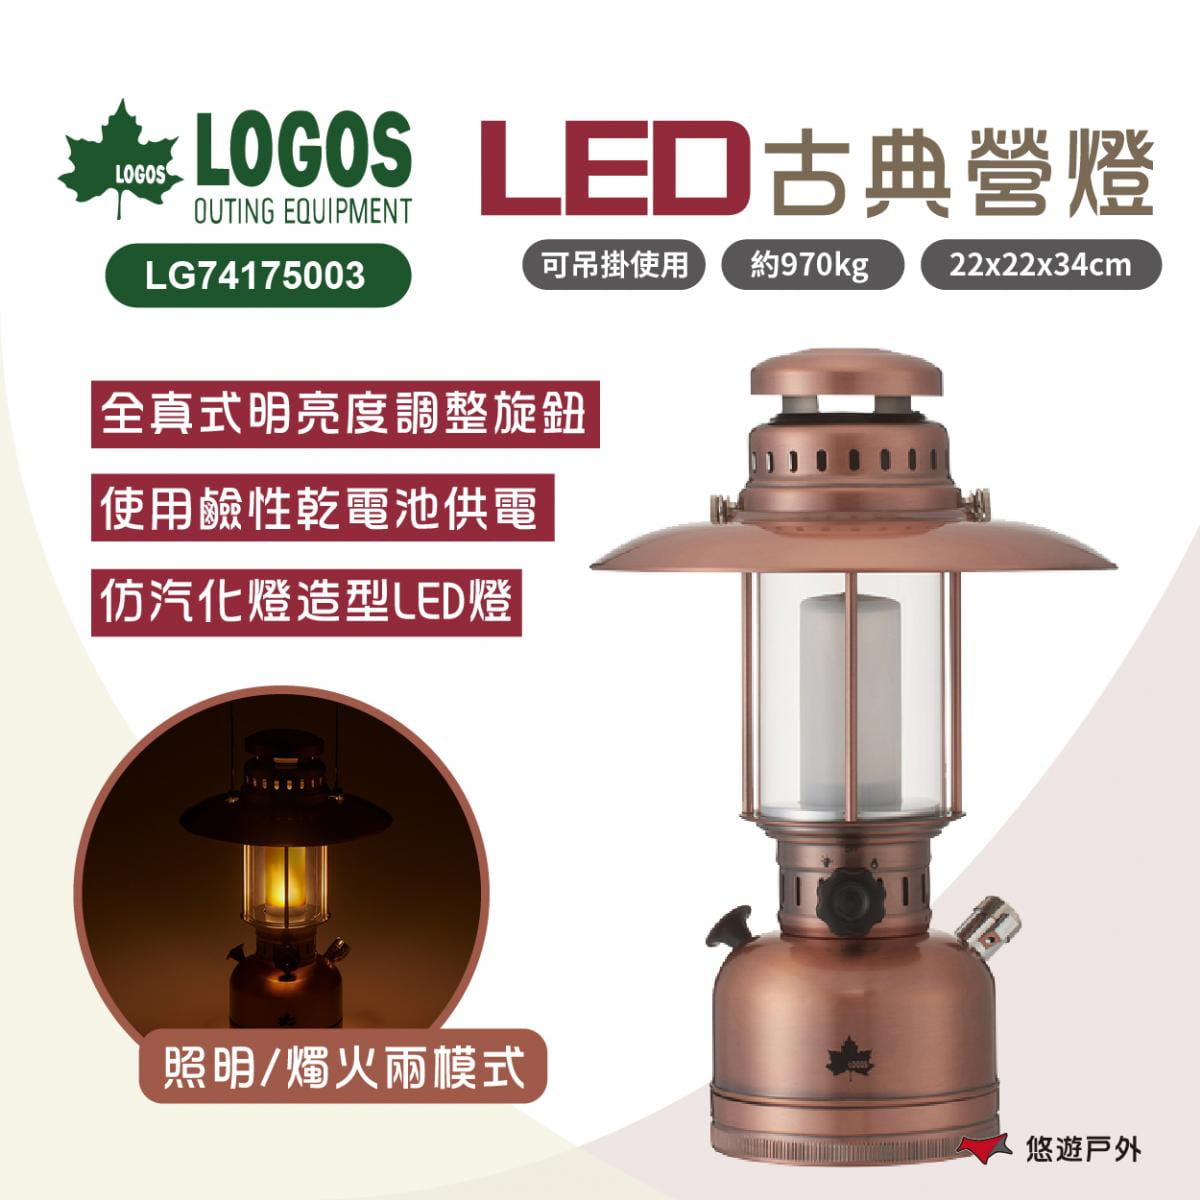 【LOGOS】古典LED營燈 LG74175003 (悠遊戶外) 0